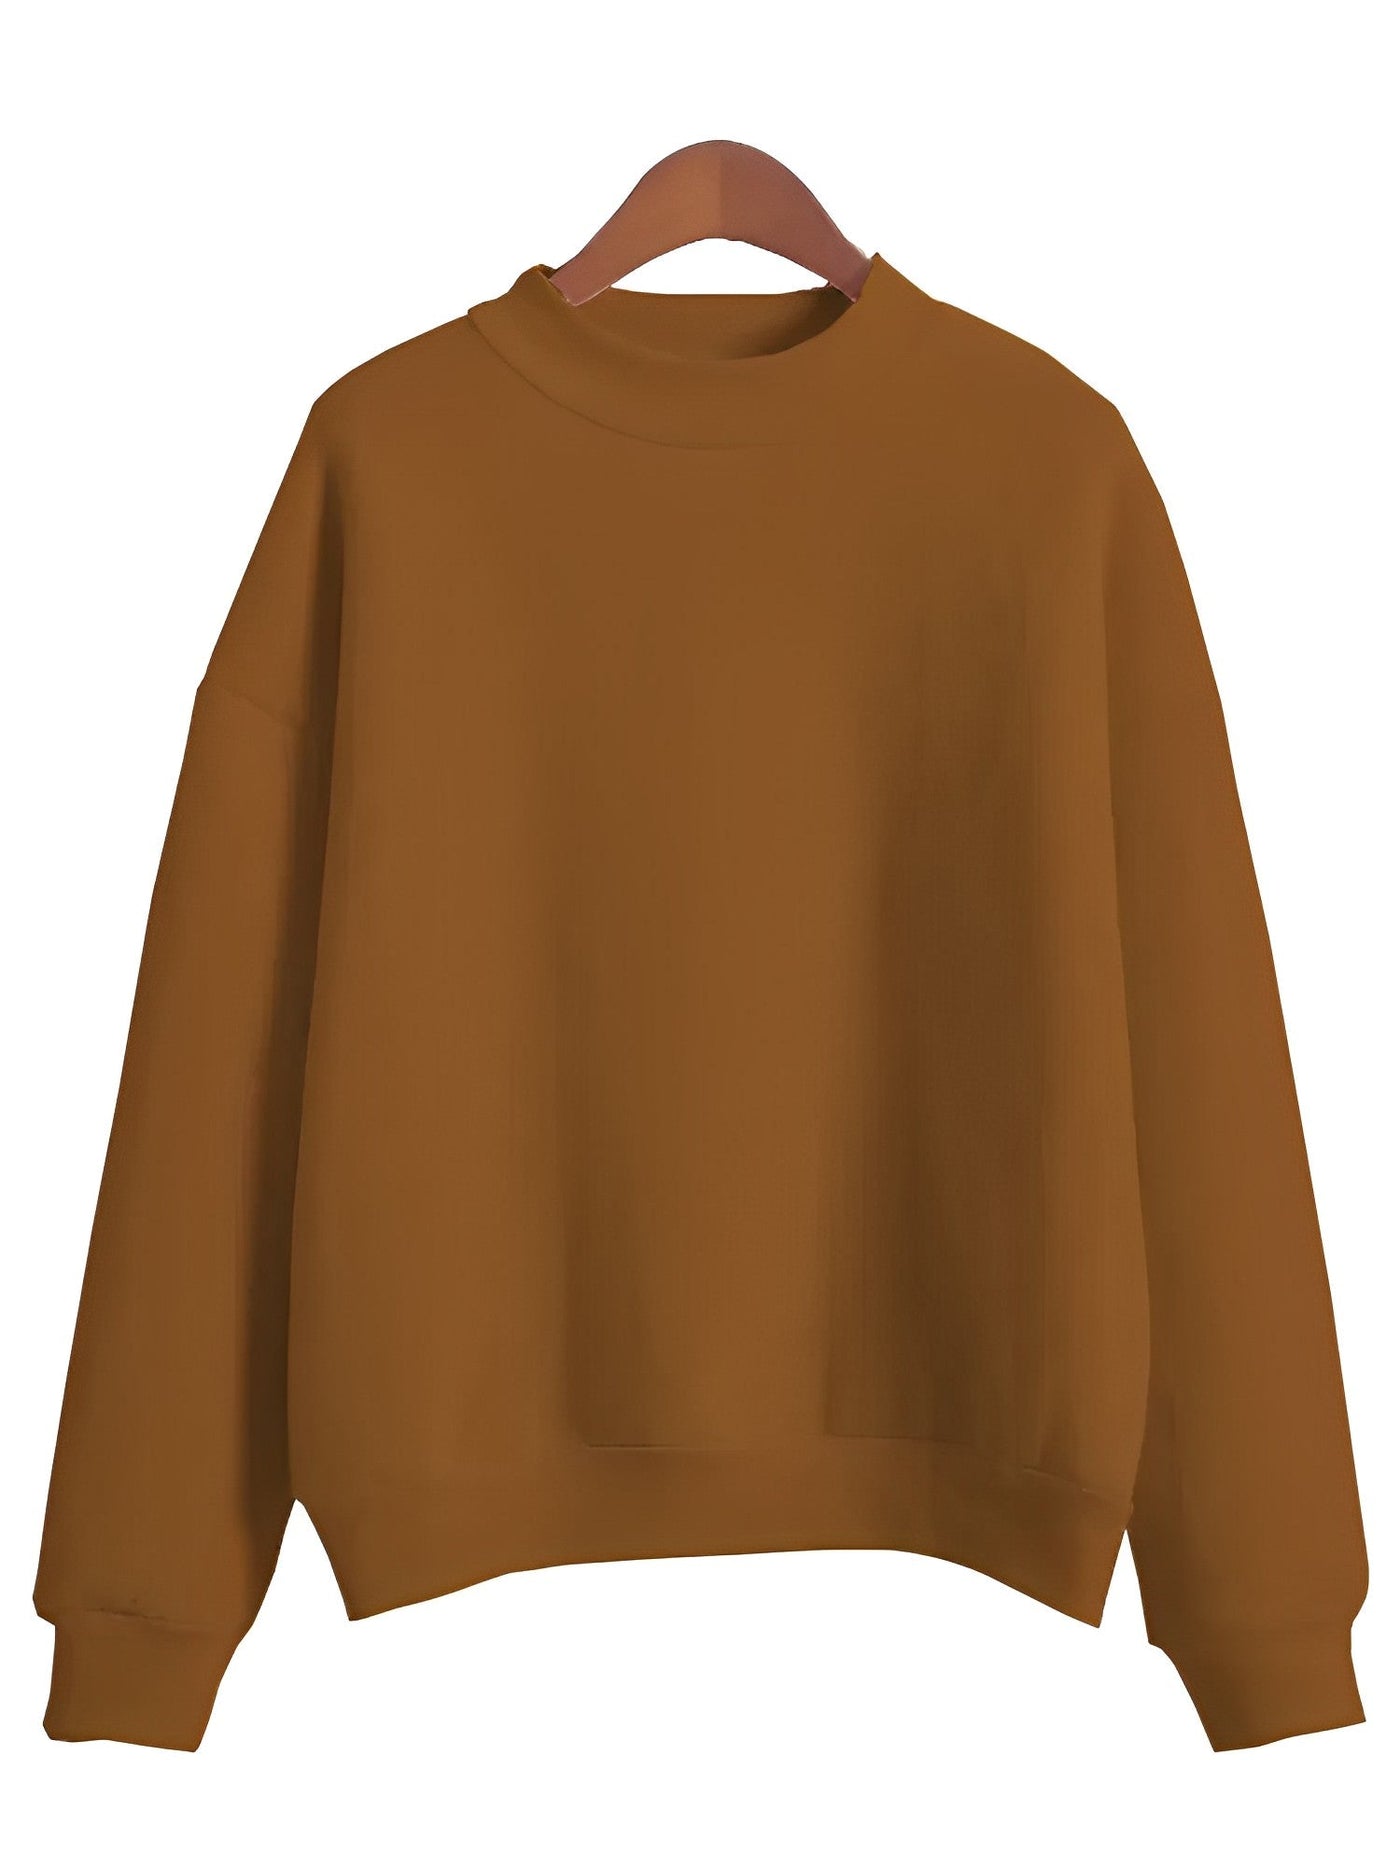 Damen-Sweatshirt mit Rundhalsausschnitt - TOMIE